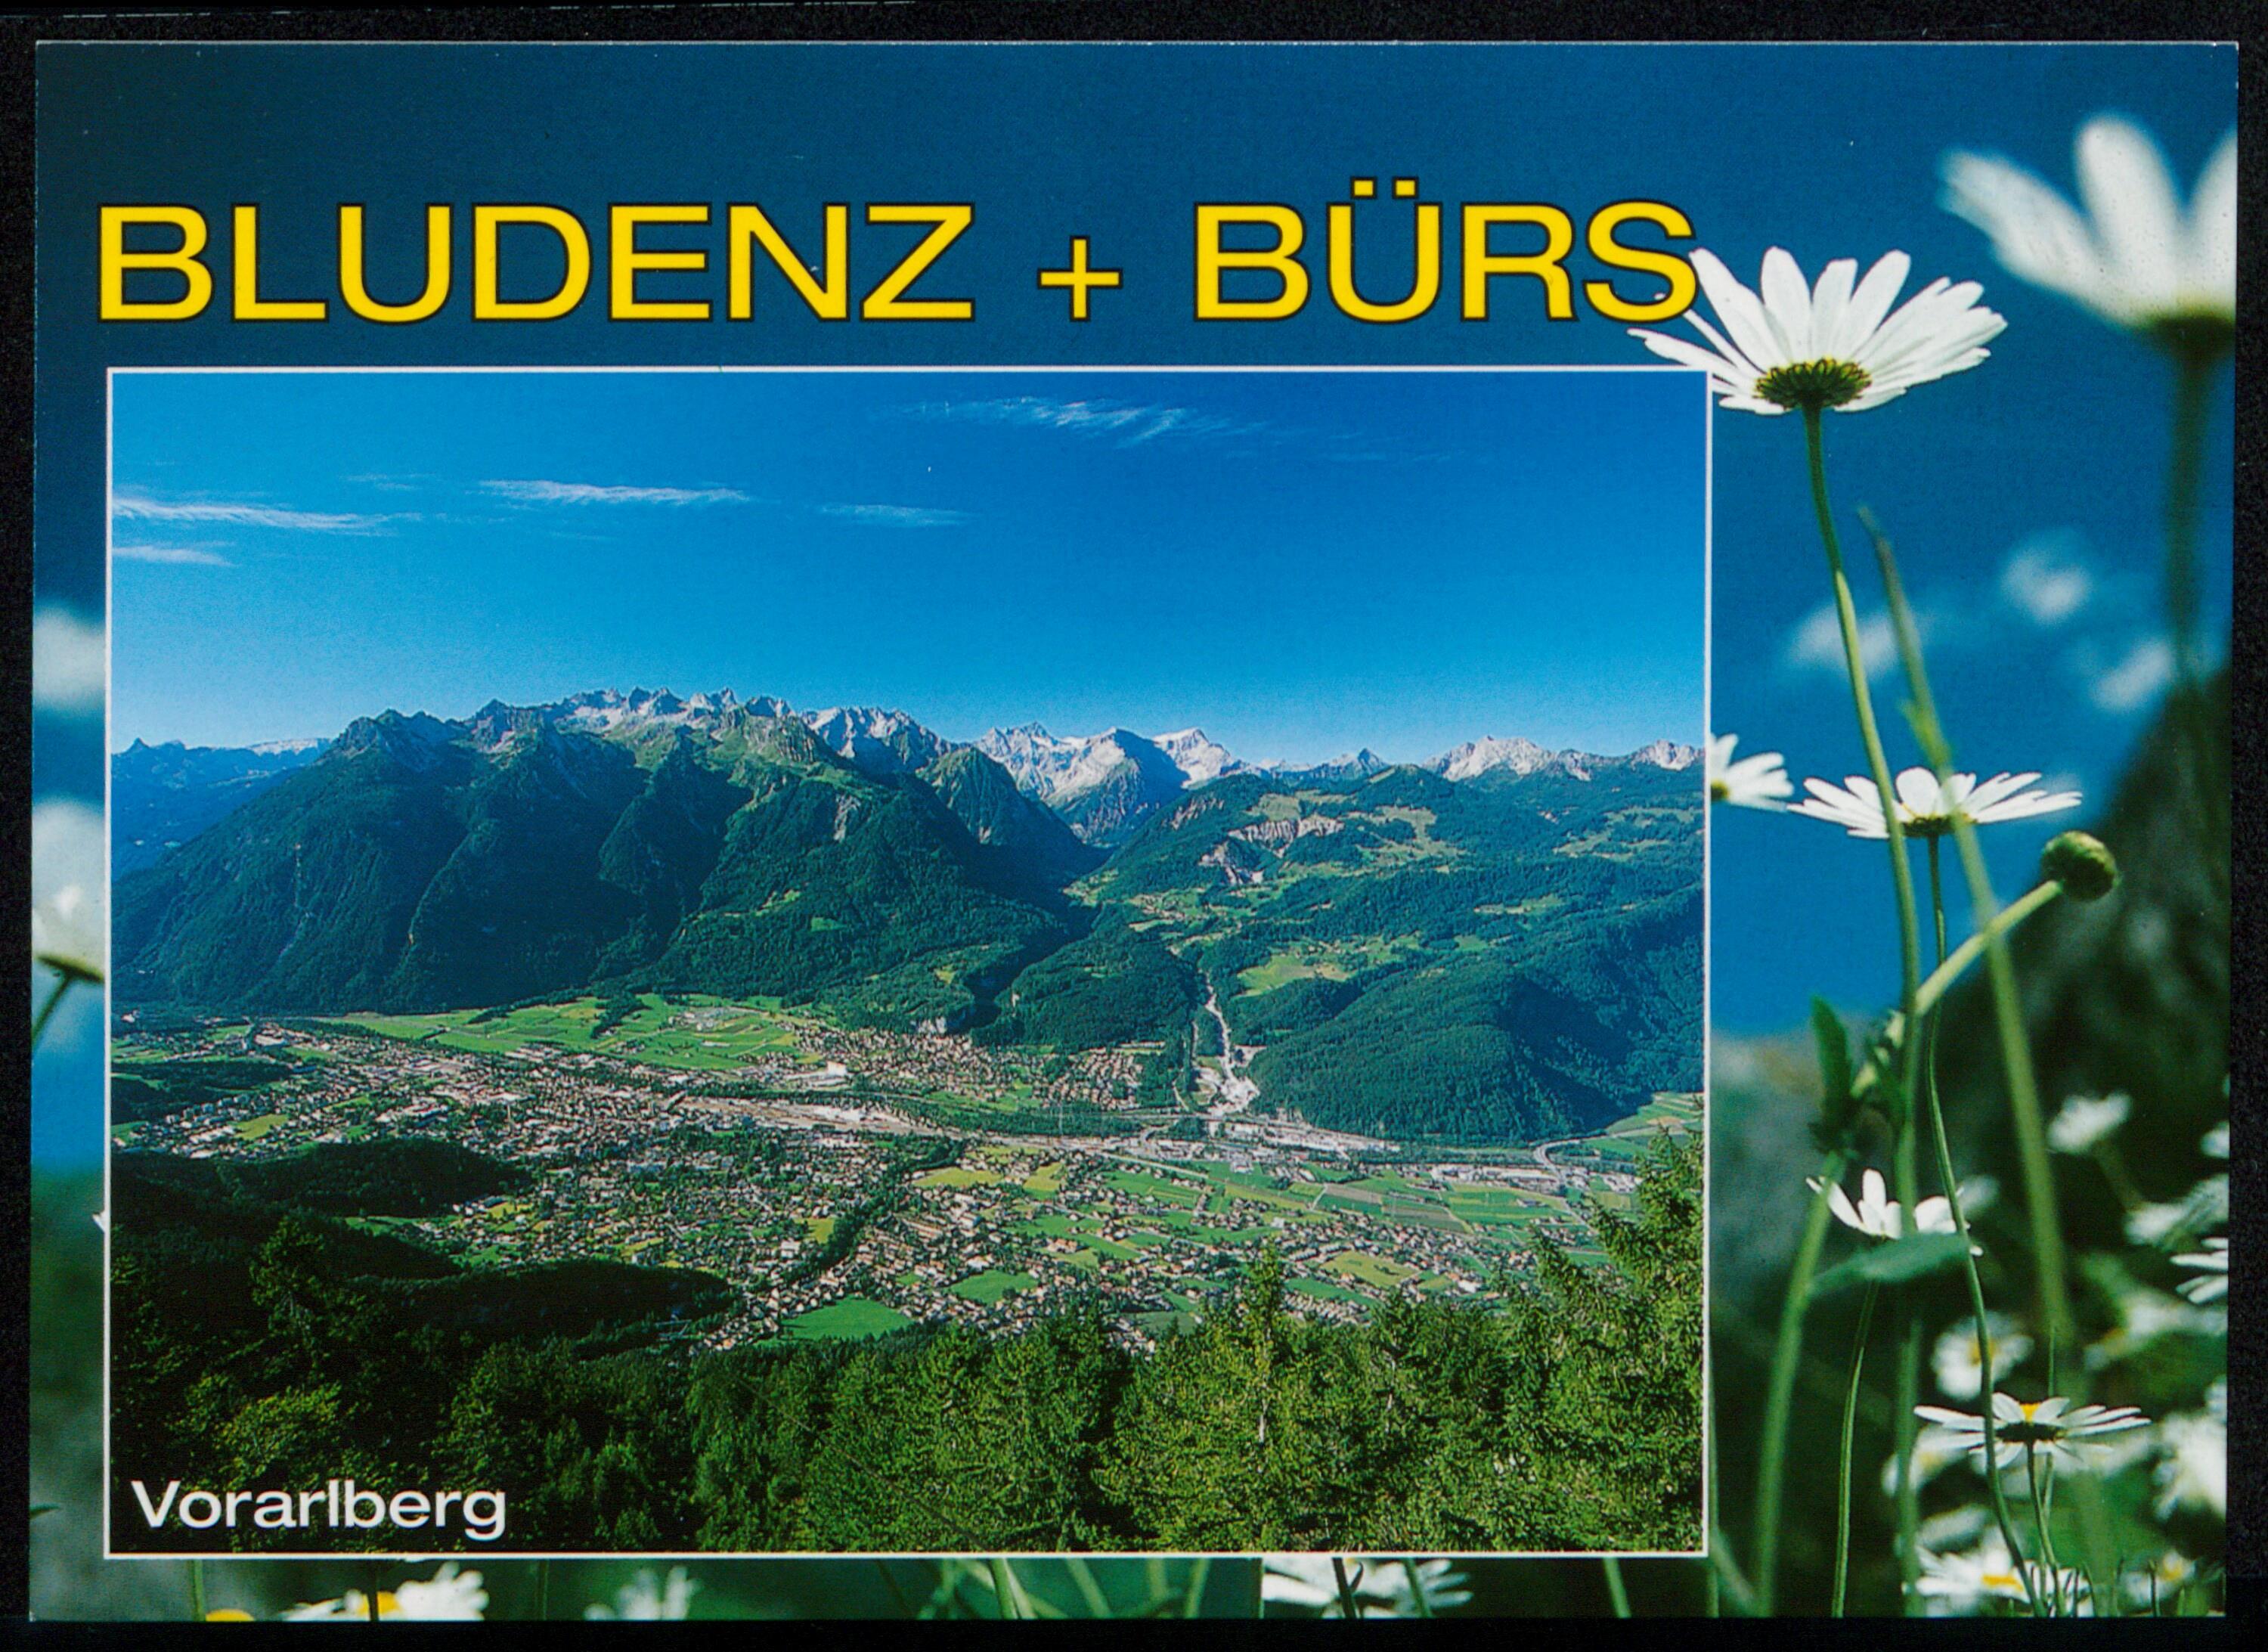 Bludenz + Bürs Vorarlberg></div>


    <hr>
    <div class=